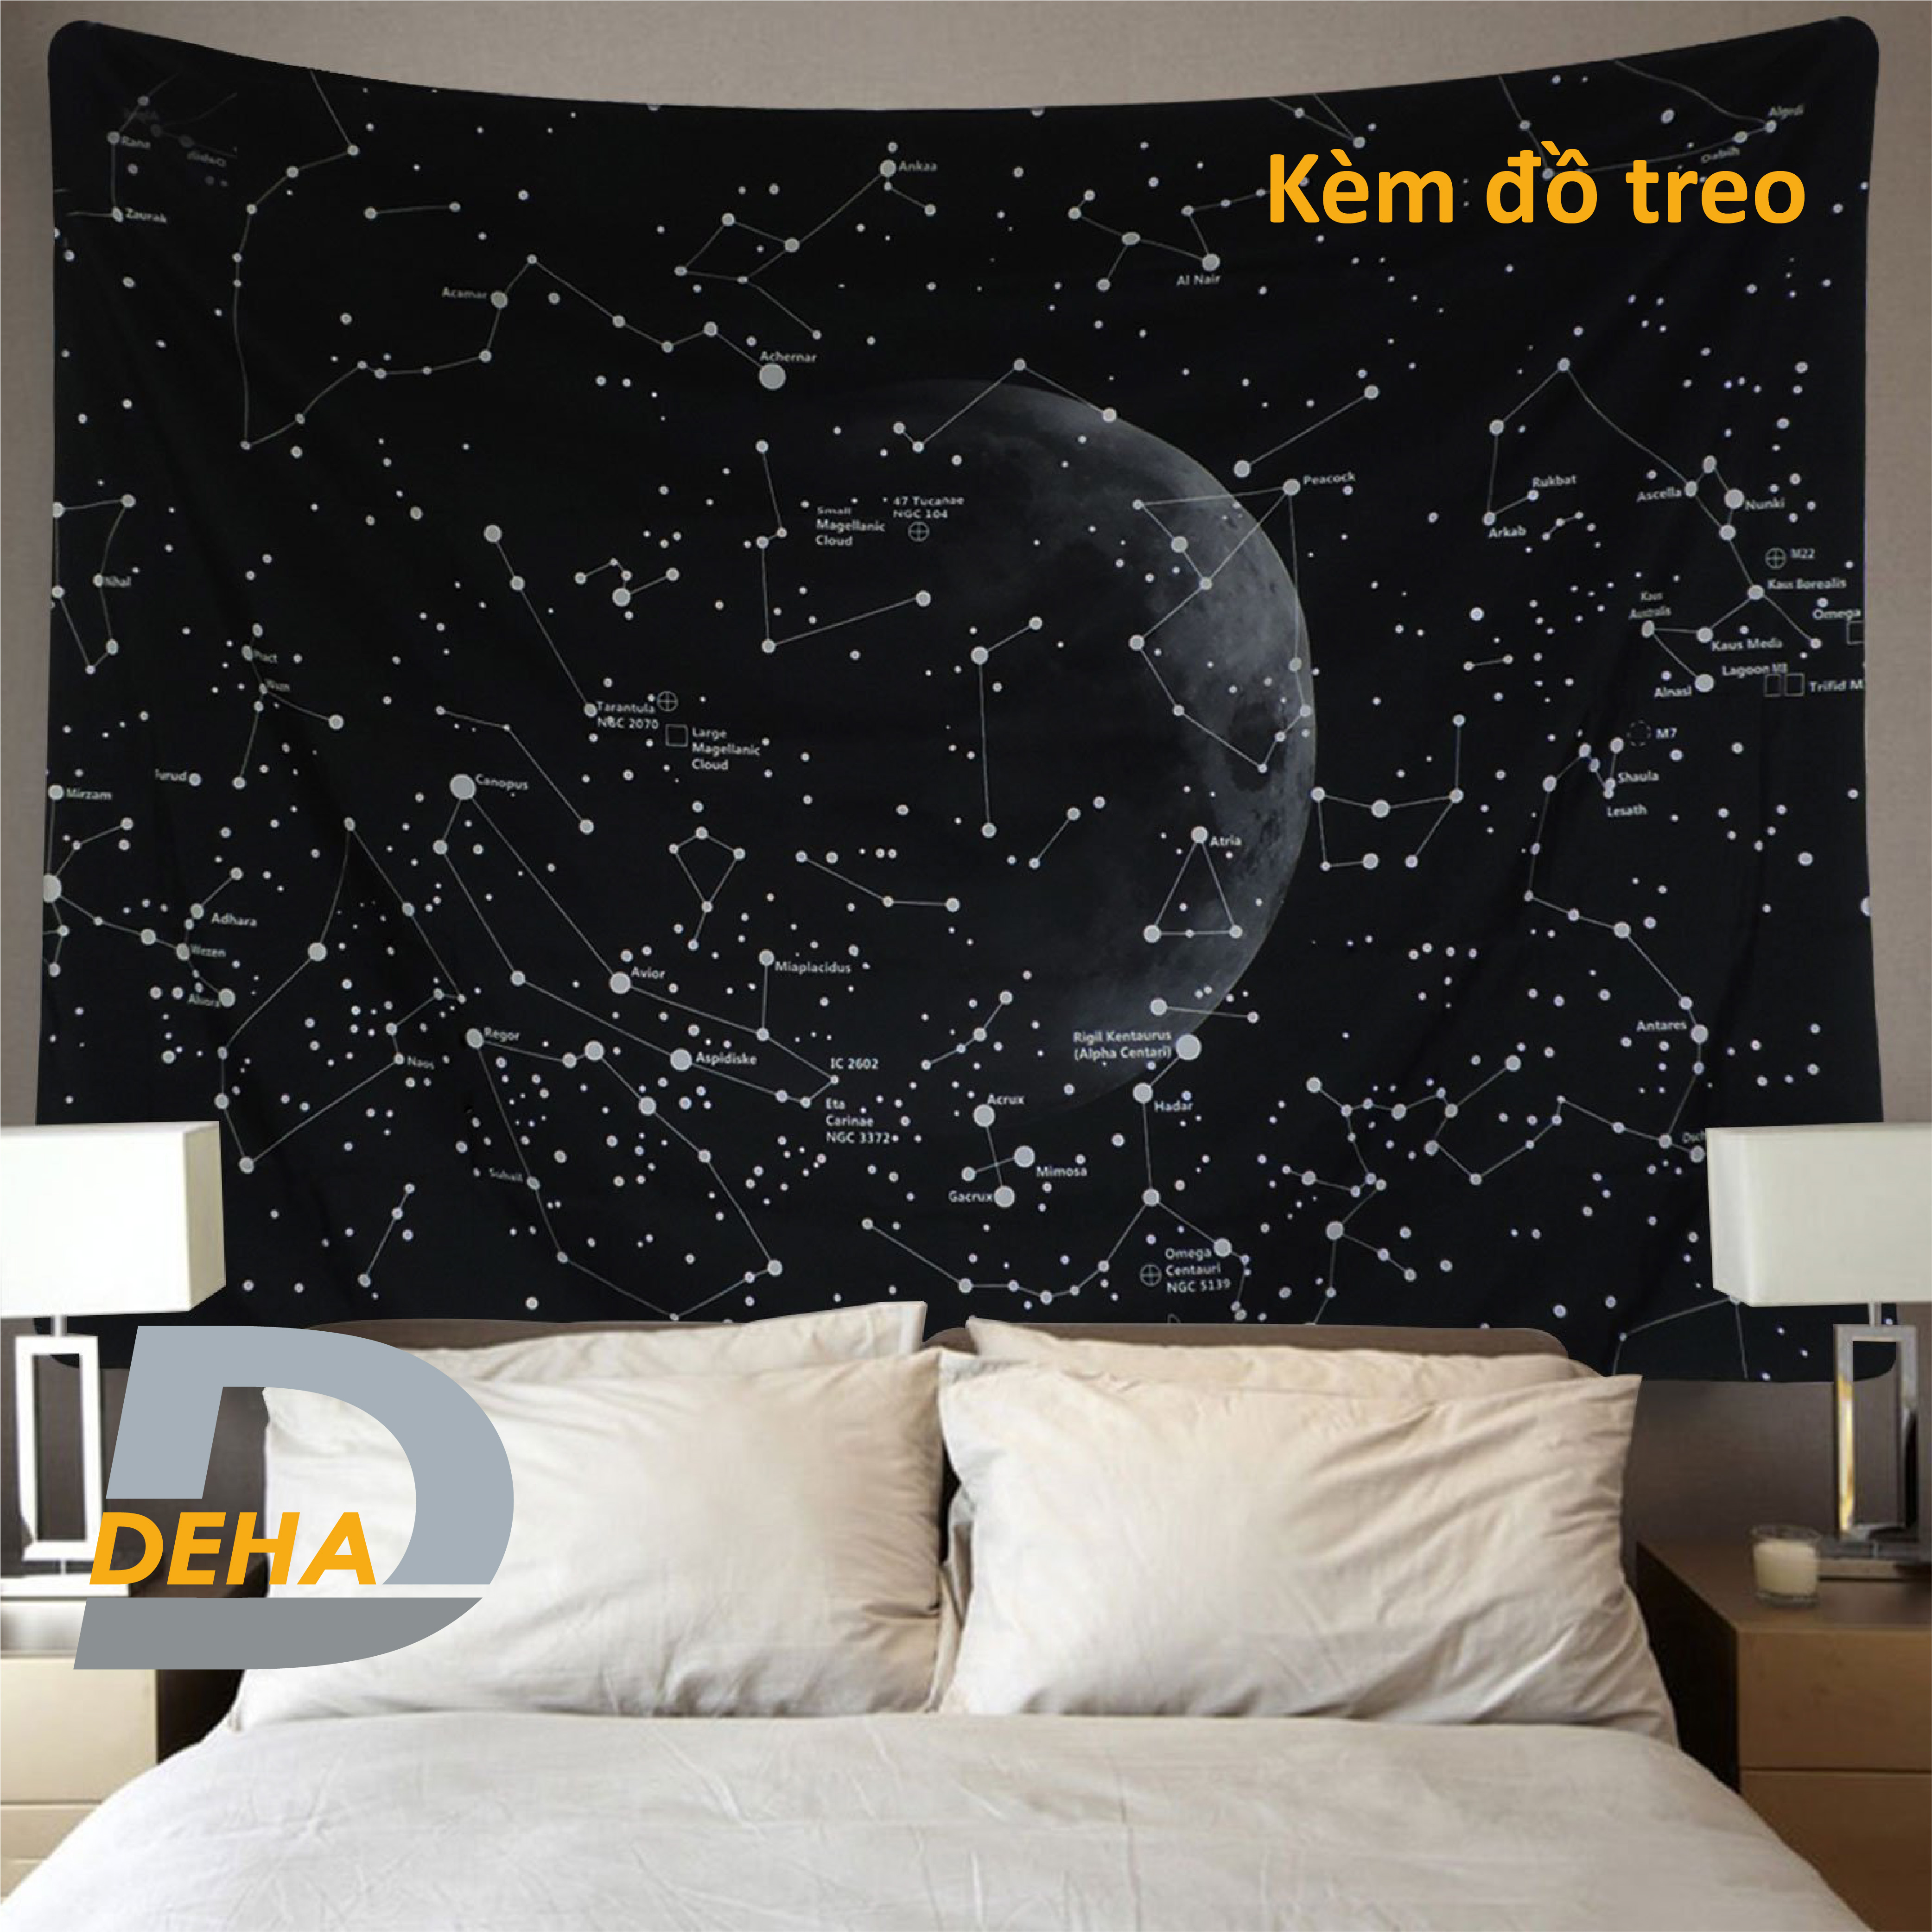 Thảm trang trí tranh vải treo tường họa tiết dải ngân hà bầu trời sao decor phòng nhà cửa, dán tường, cạnh giường